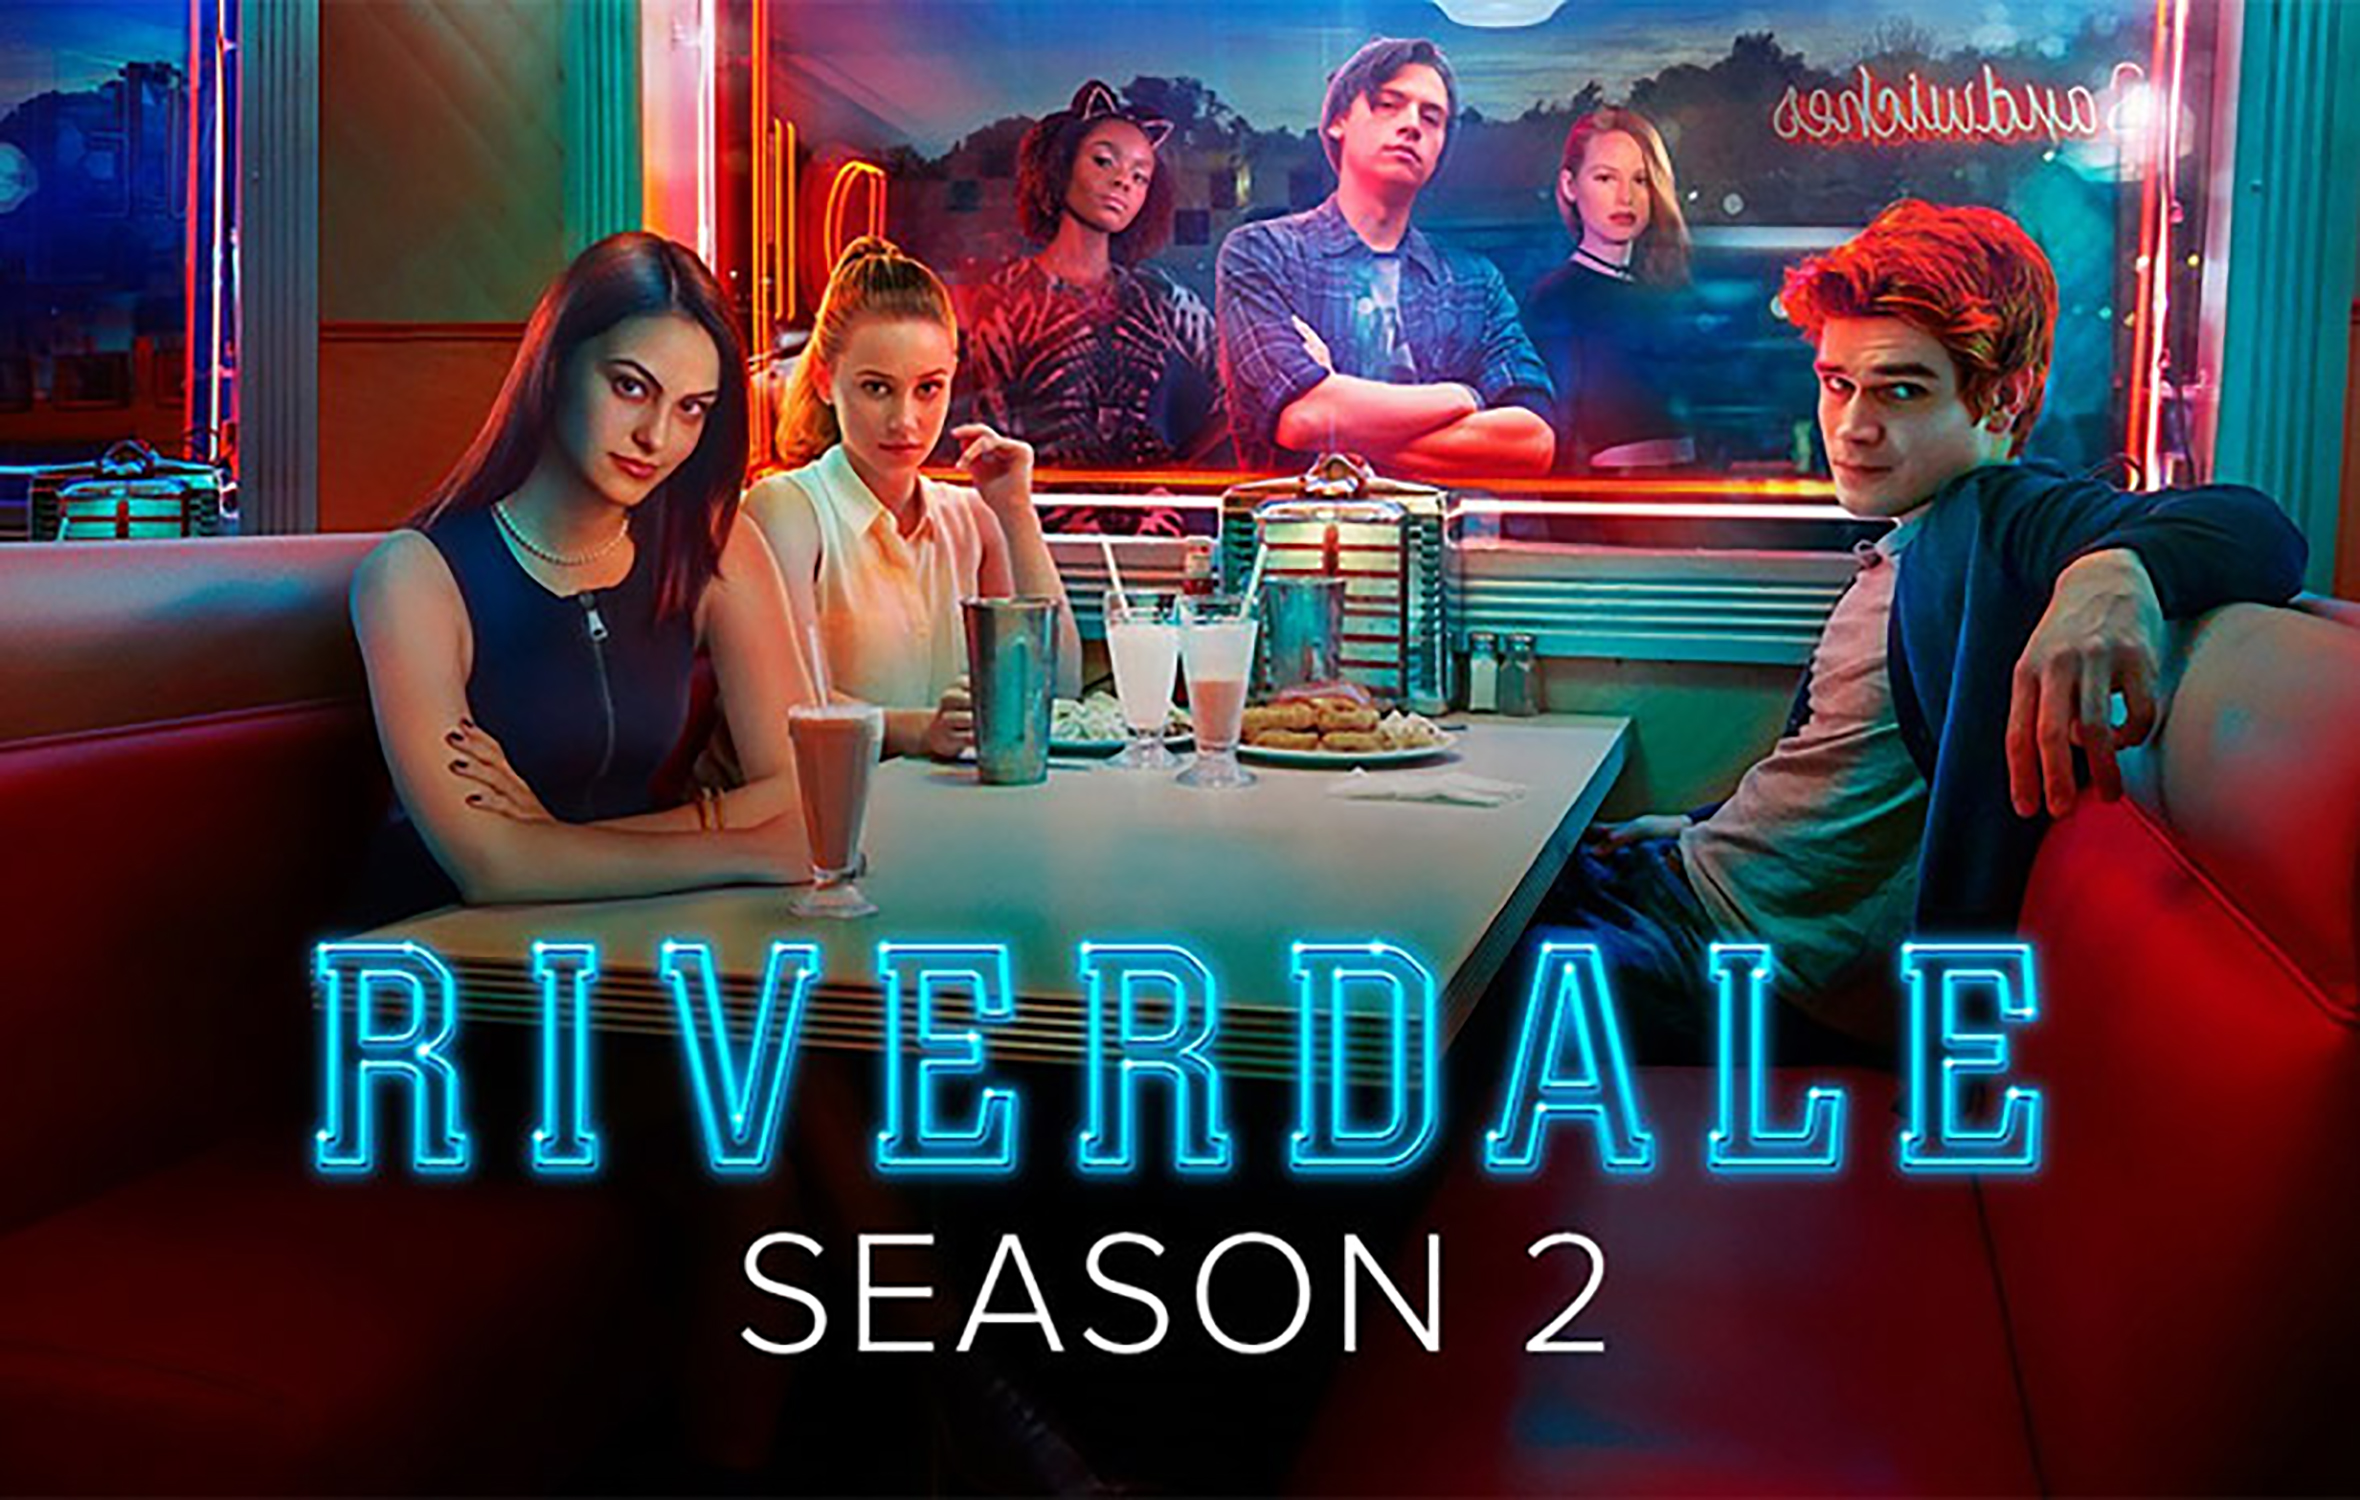 Riverdale season two Poster